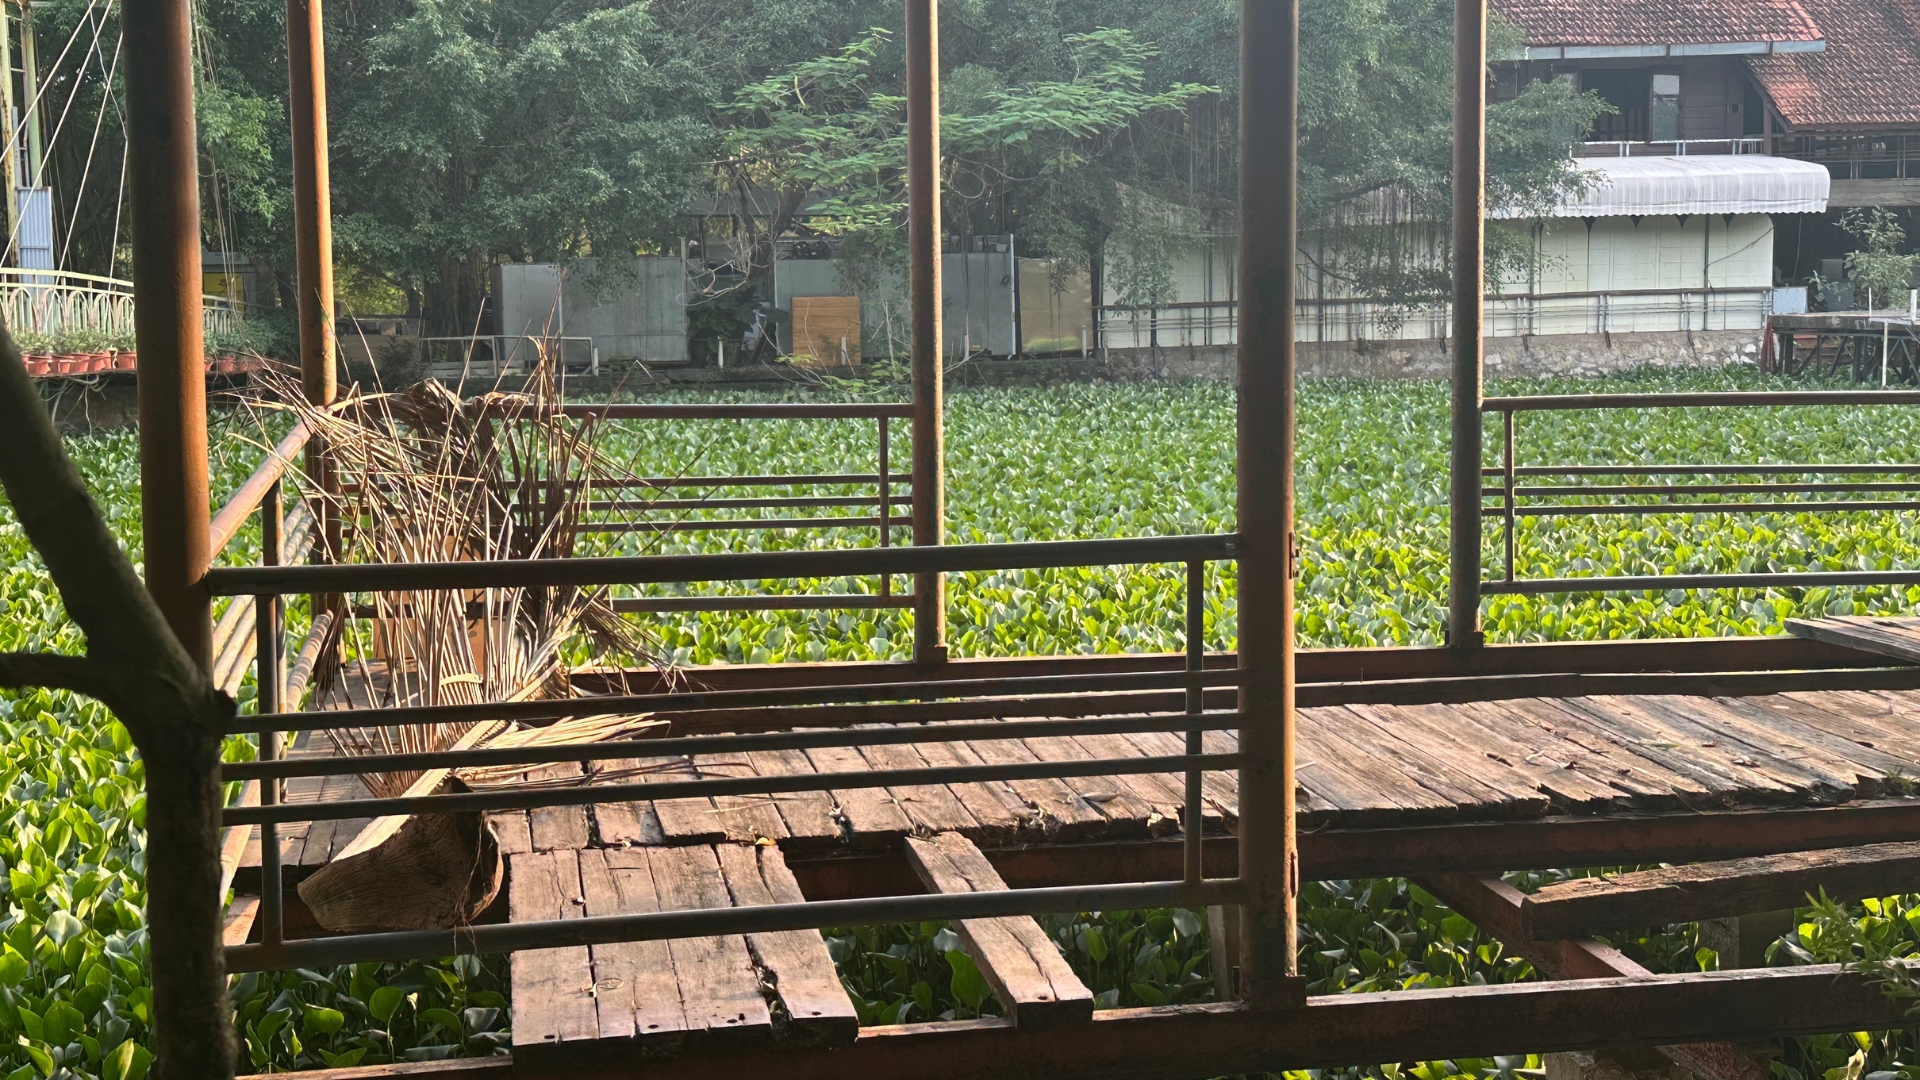 Khu công viên sinh thái rộng hơn 15ha tại Hà Nội: Từ đồ án lý tưởng đến hiện thực phũ phàng - Ảnh 10.